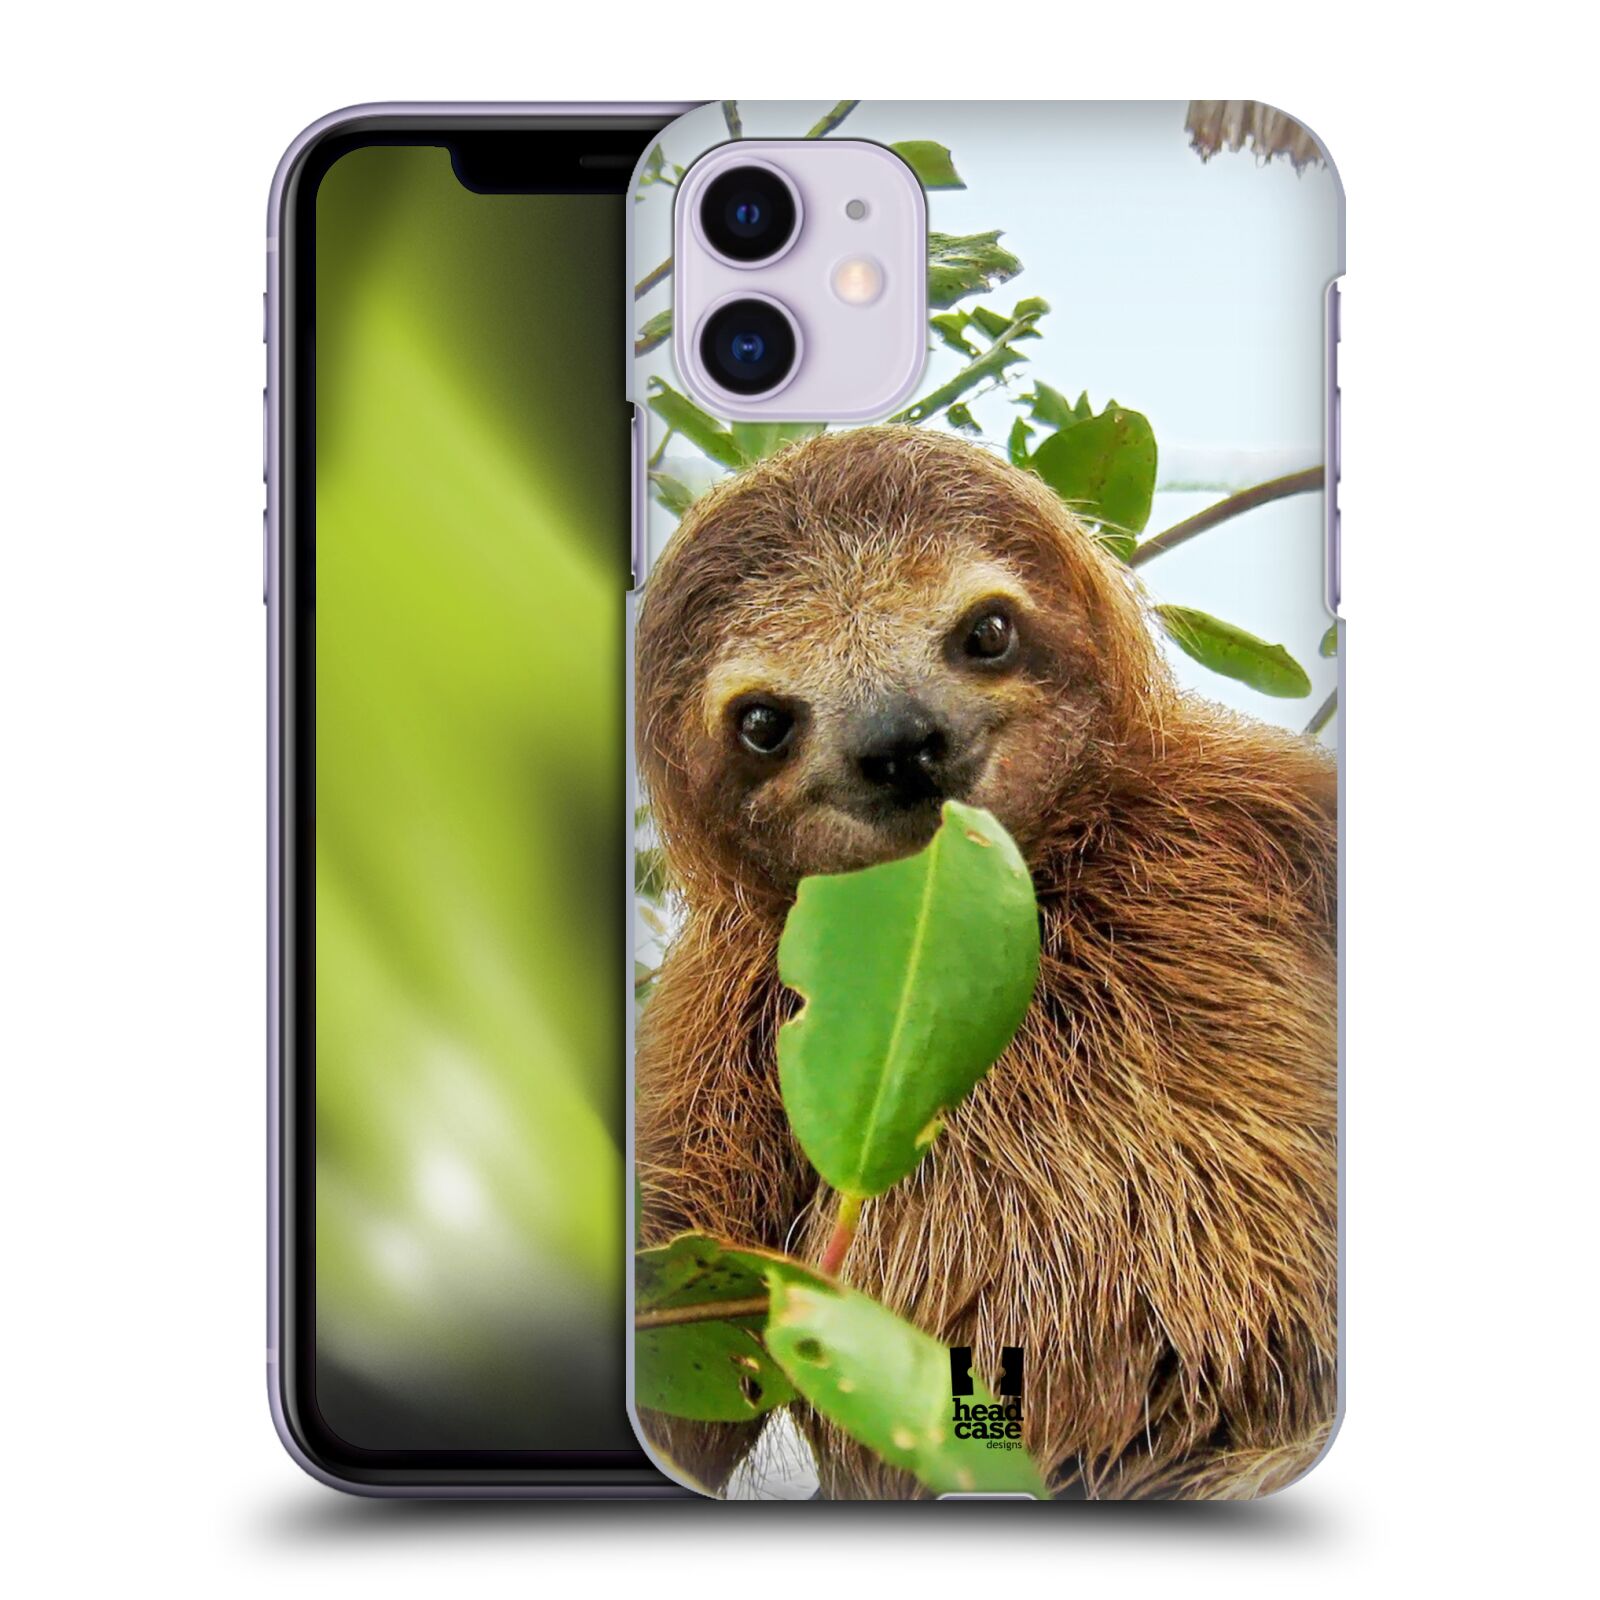 Pouzdro na mobil Apple Iphone 11 - HEAD CASE - vzor slavná zvířata foto lenochod